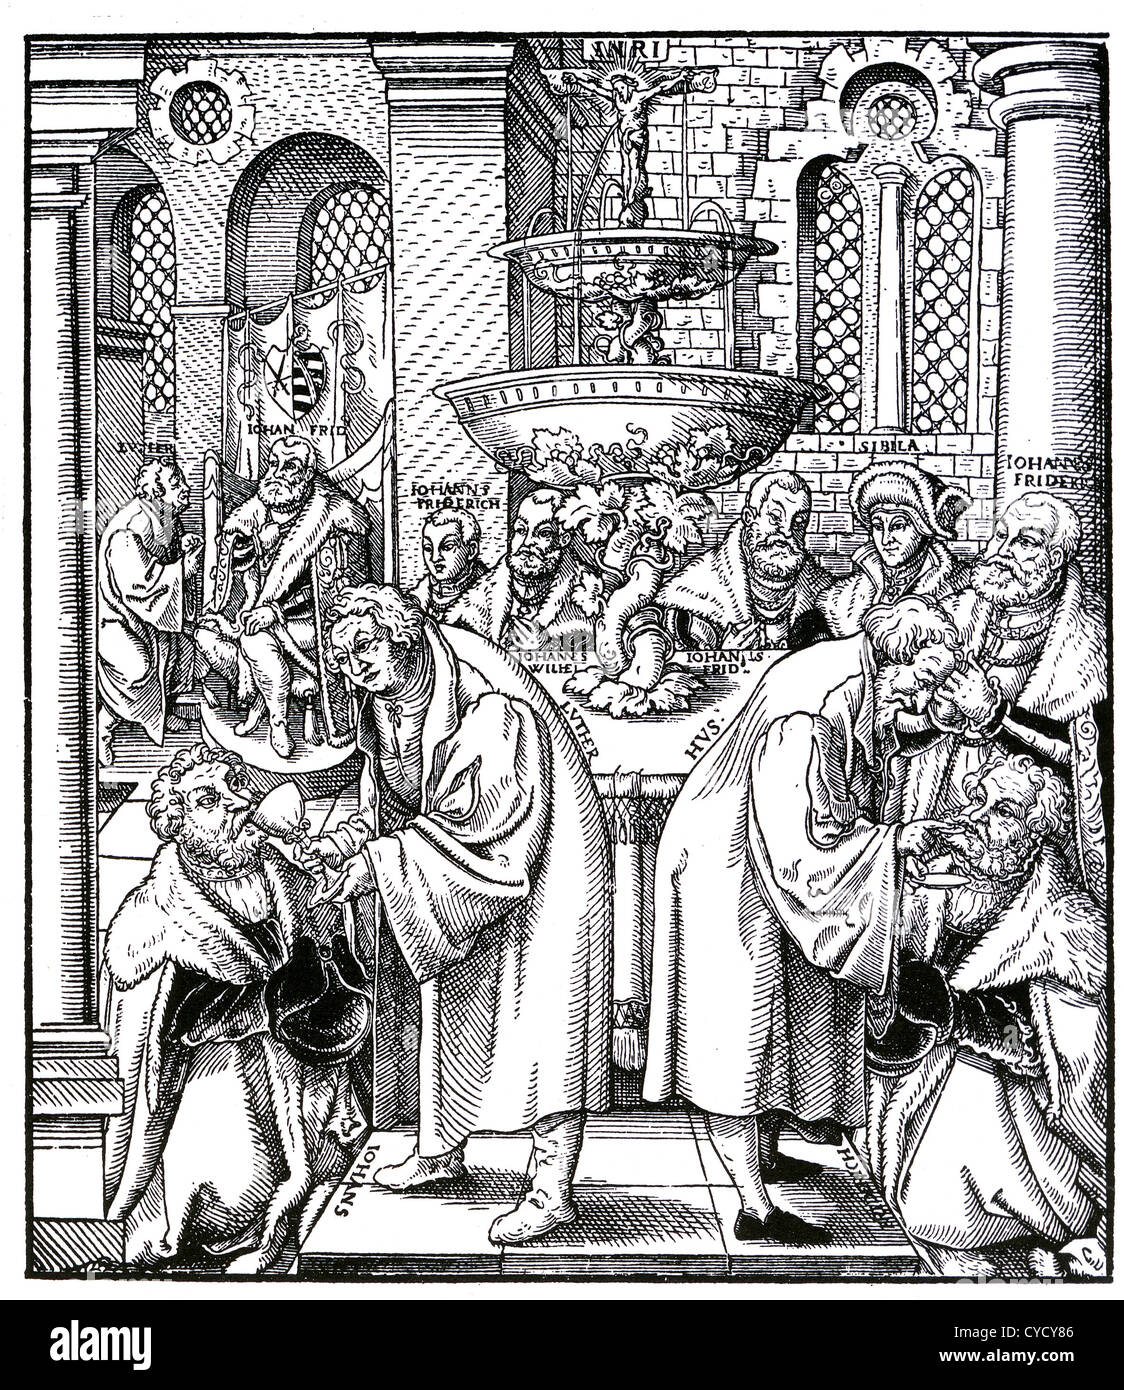 MARTIN LUTHER (1483-1546) auf der linken Seite und Jan Hus geben die Sacrement, beobachtet von einigen von den deutschen Fürsten, die sie unterstützt. Stockfoto